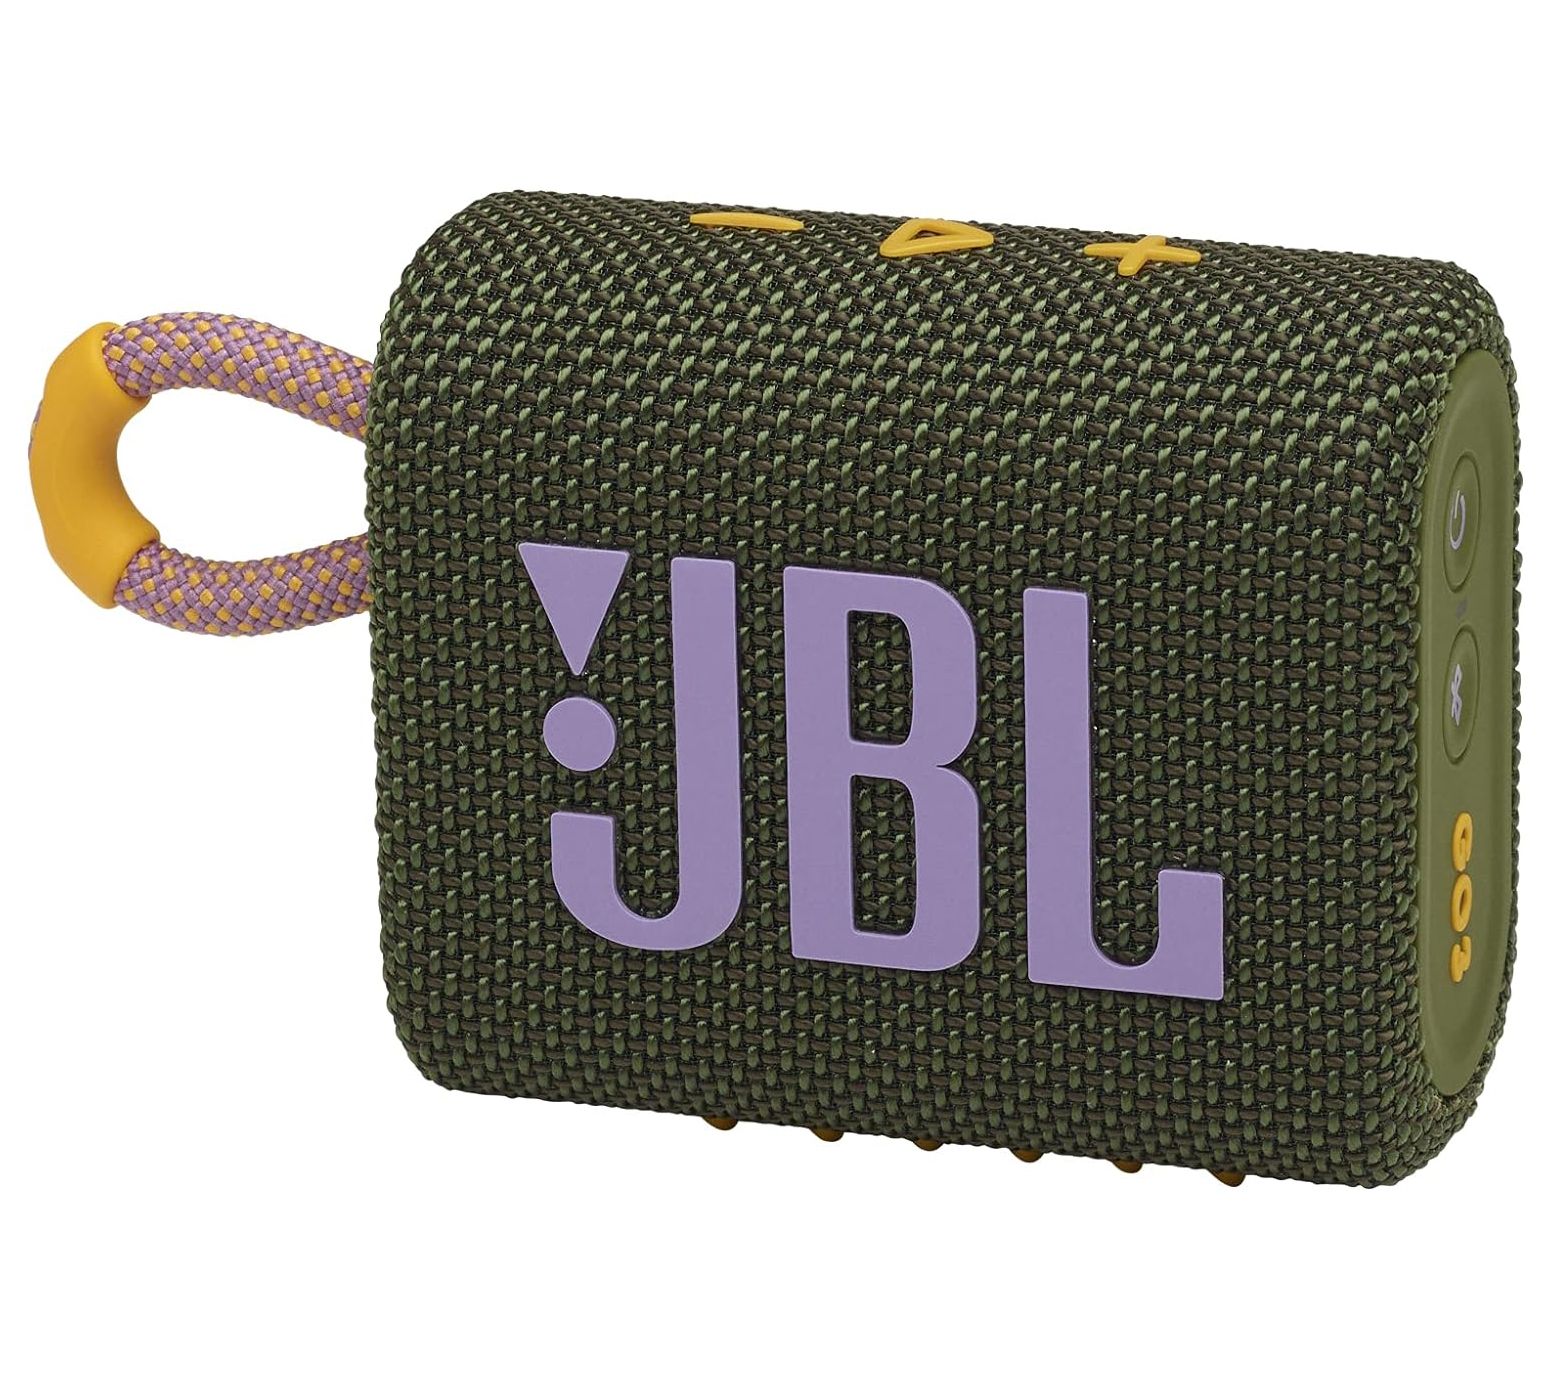 JBL Xtreme 3 Portable Bluetooth Waterproof Speaker - Black - Target  Certified Refurbished